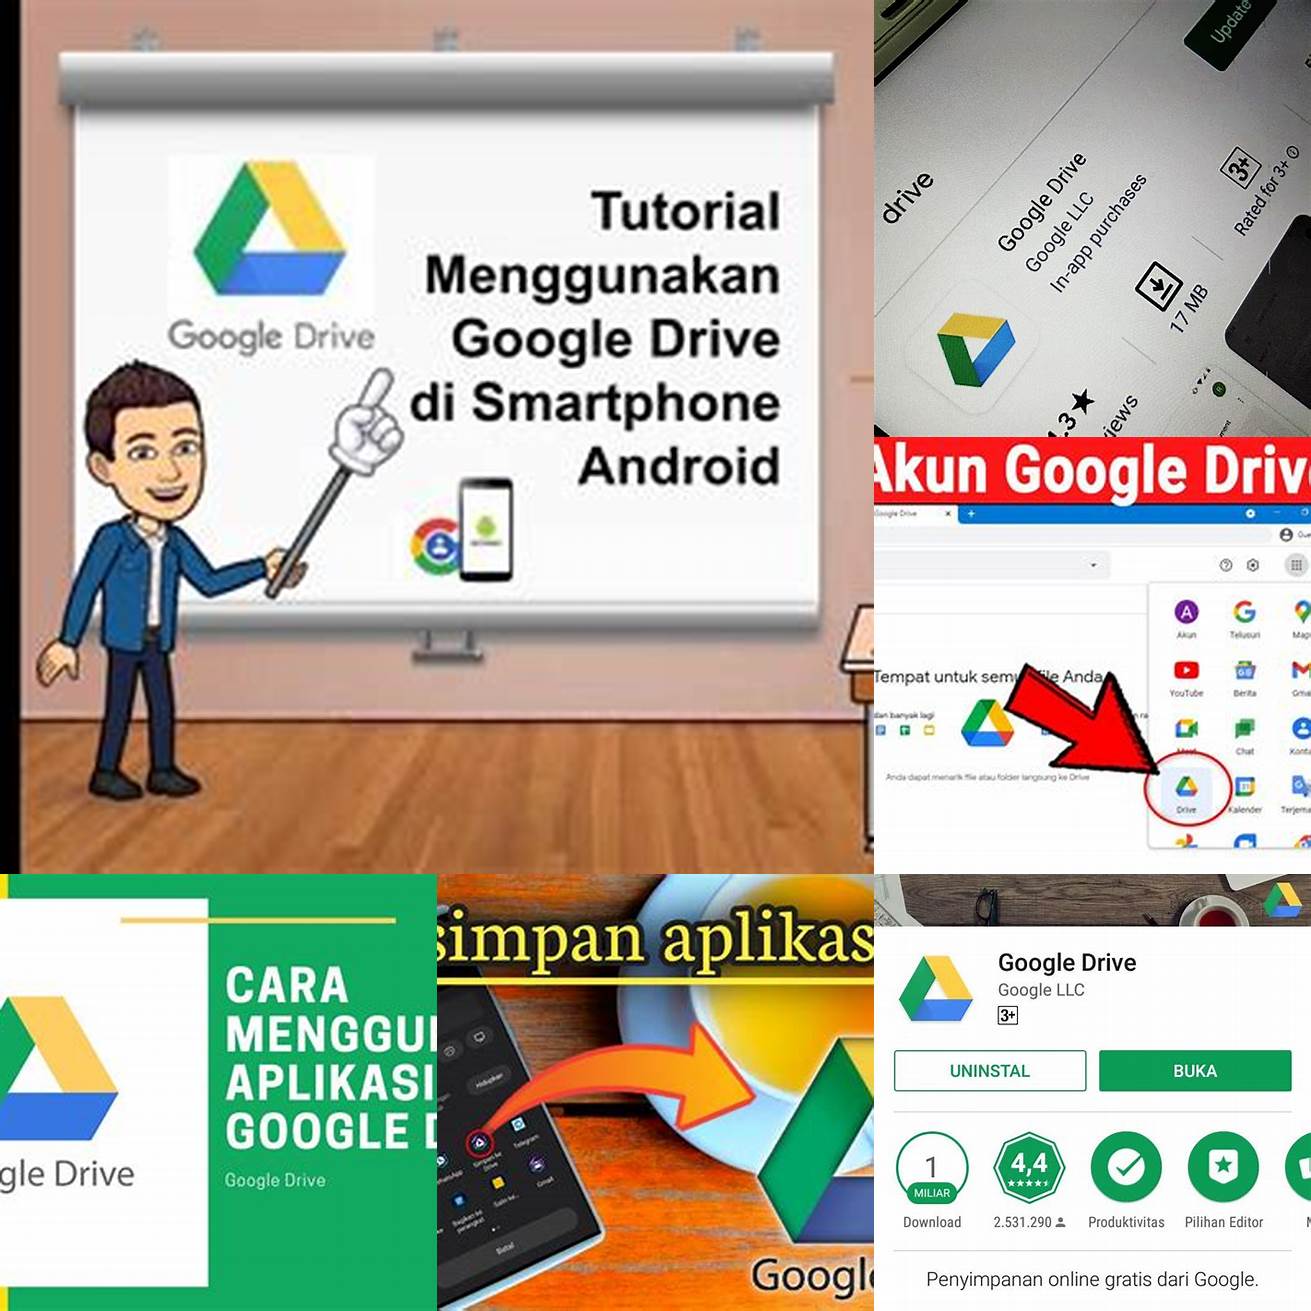 3 Menggunakan aplikasi Google Drive di smartphone